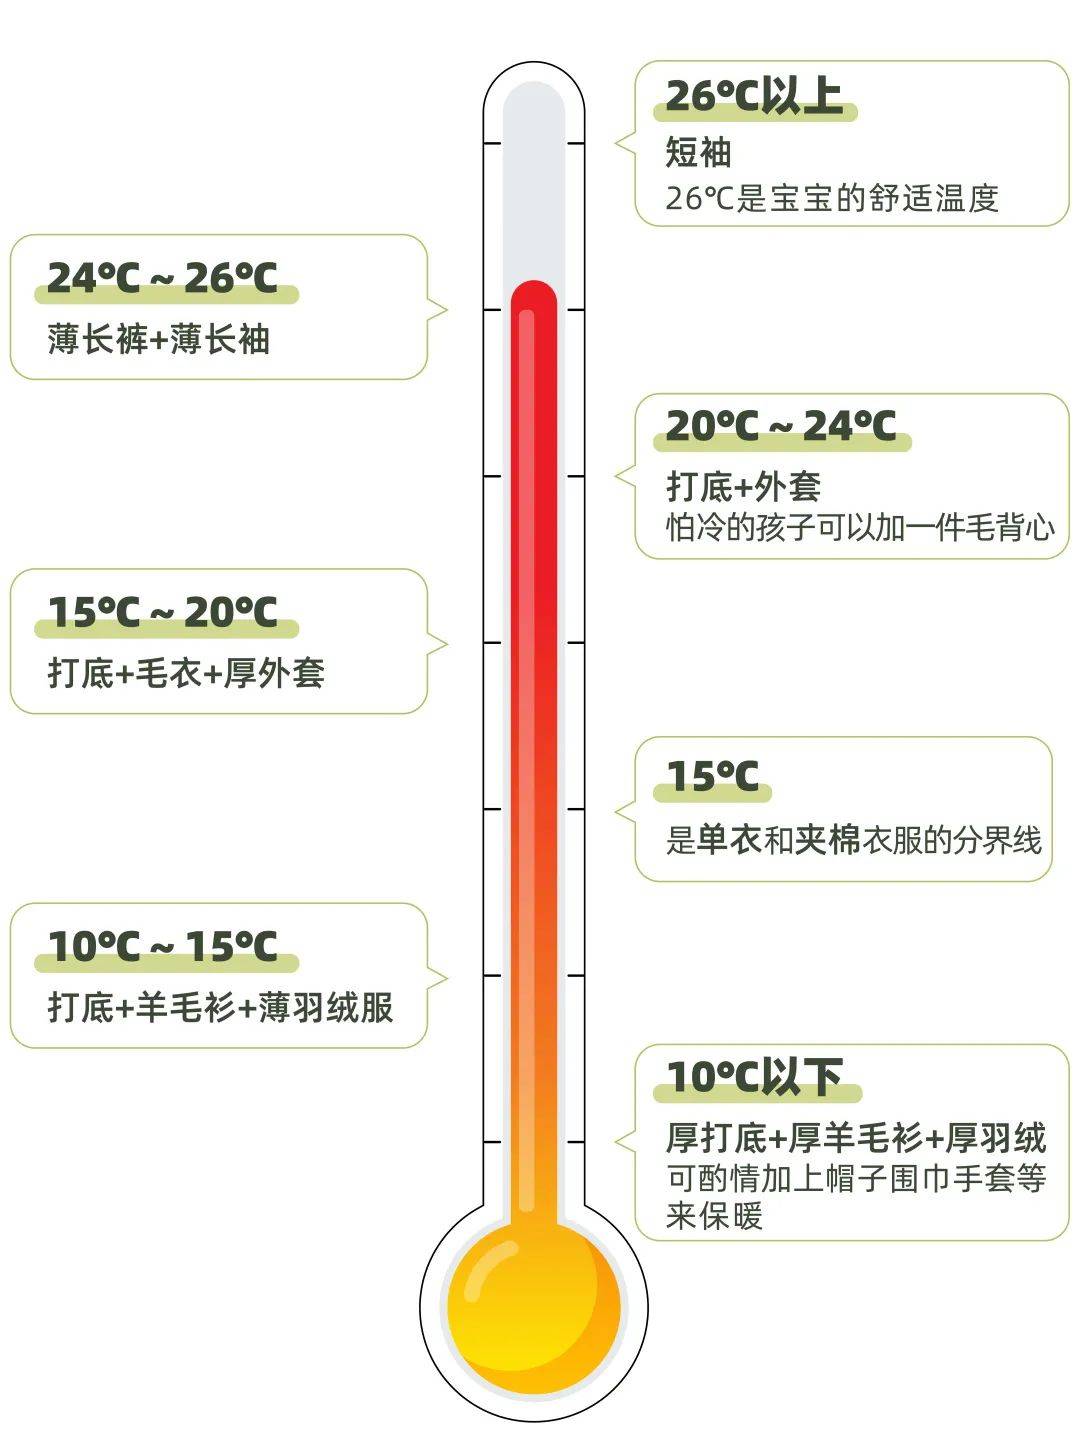 不同温度穿衣指南图解图片